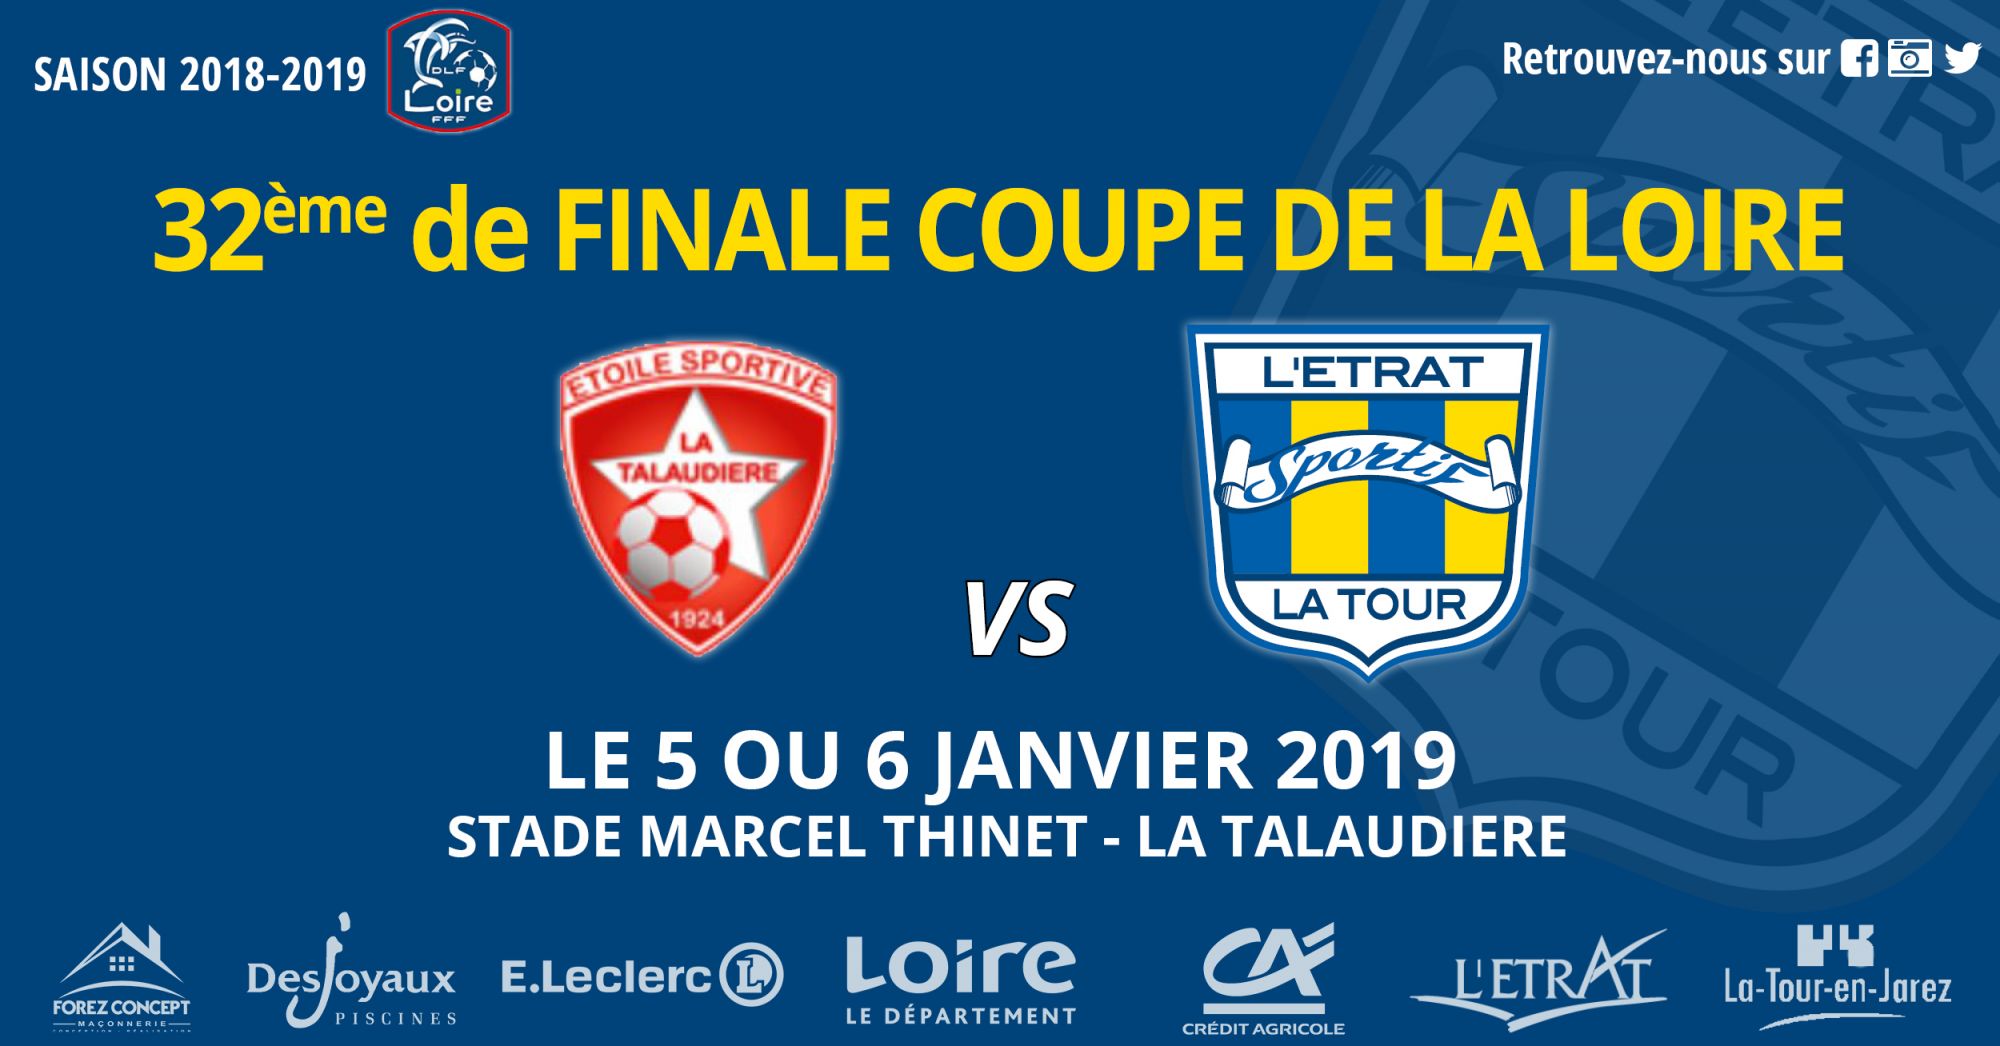 SÃ©niors : DÃ©placement Ã  La TalaudiÃ¨re pour les 32' de finale de Coupe de la Loire